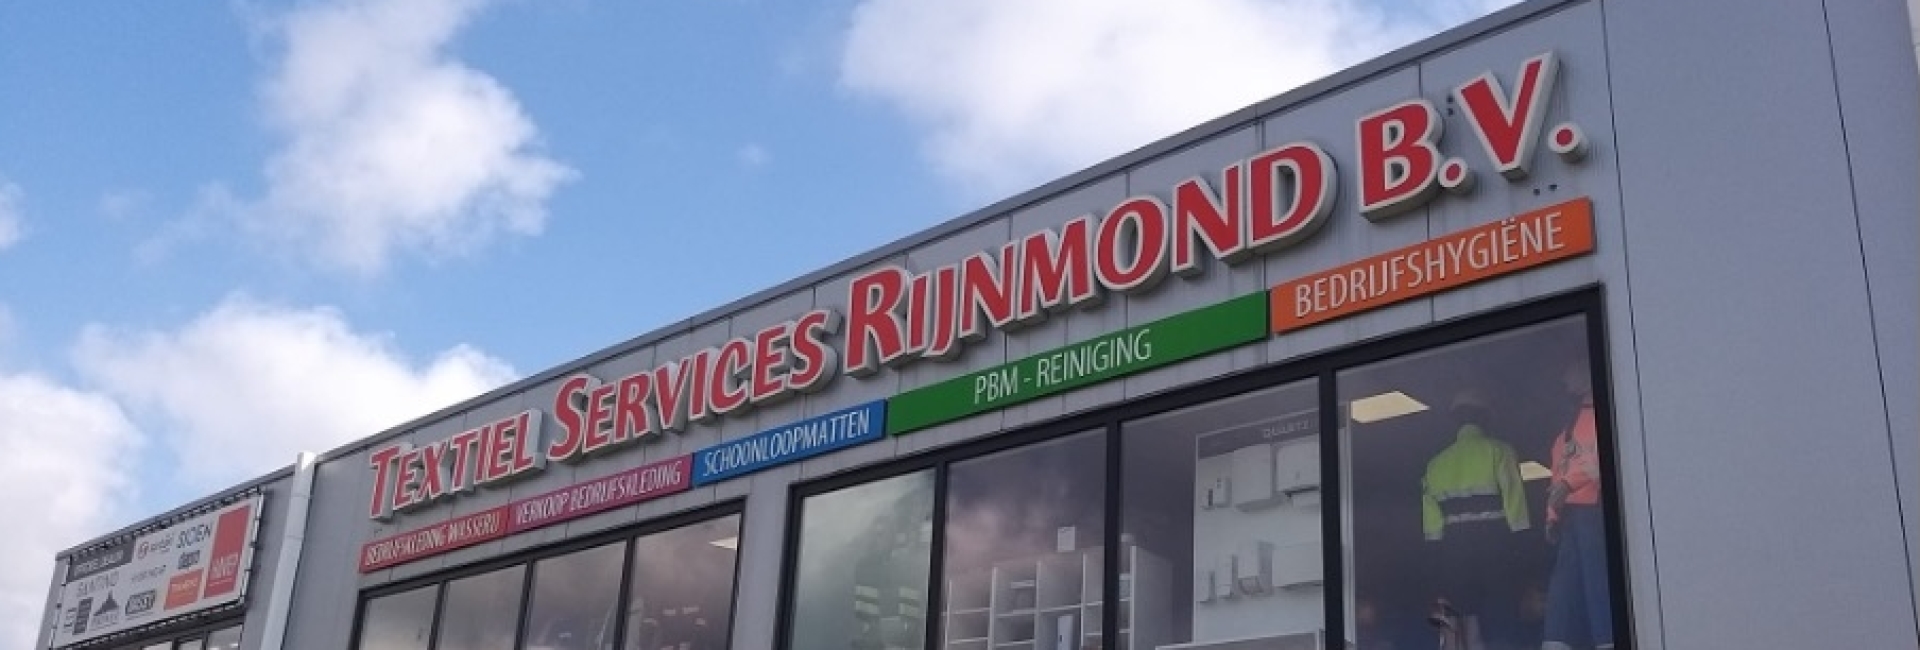 Het bedrijfspand van Textiel Services Rijnmond